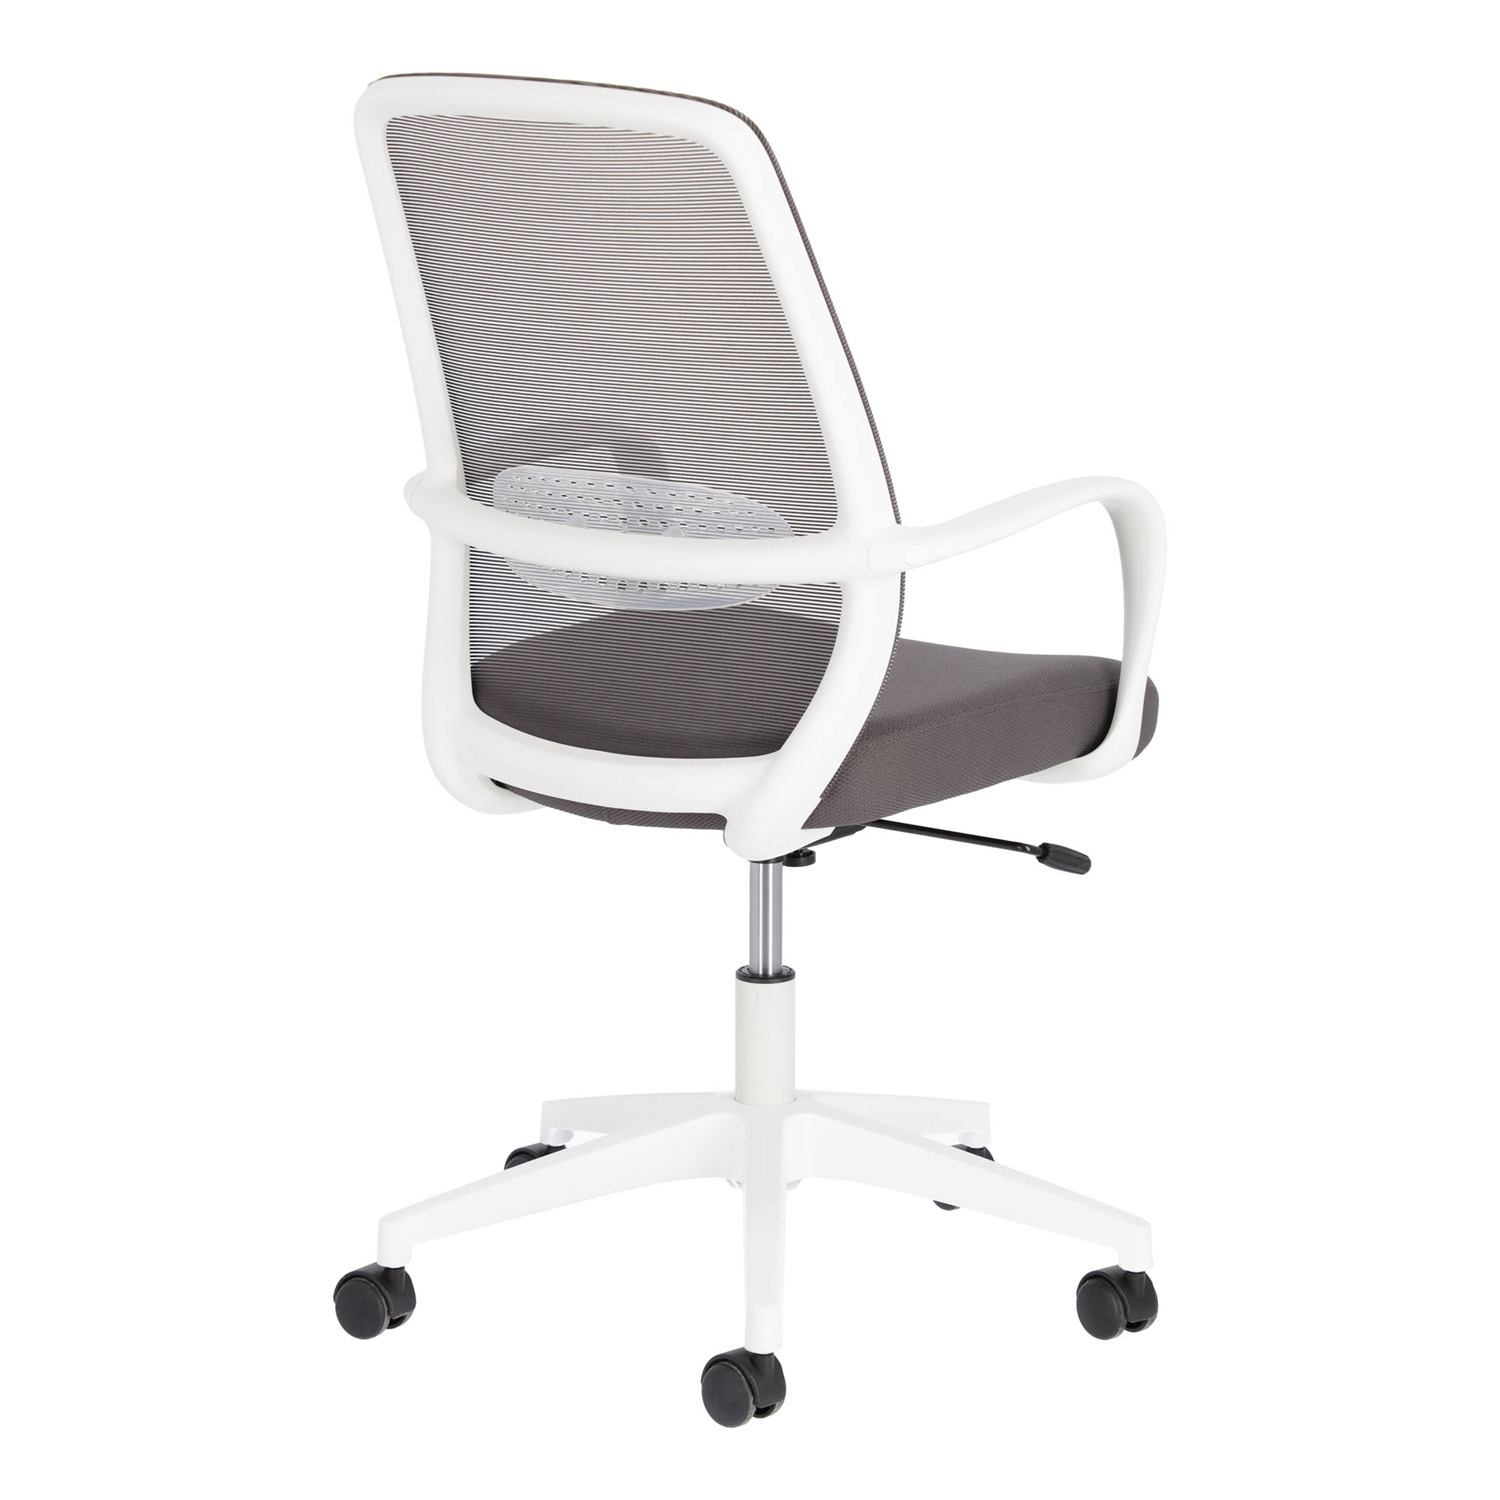 Billede af LAFORMA Melva skrivebordsstol, justerbar, m. armlæn, hjul og drejefunktion - gråt stof/hvidt plast